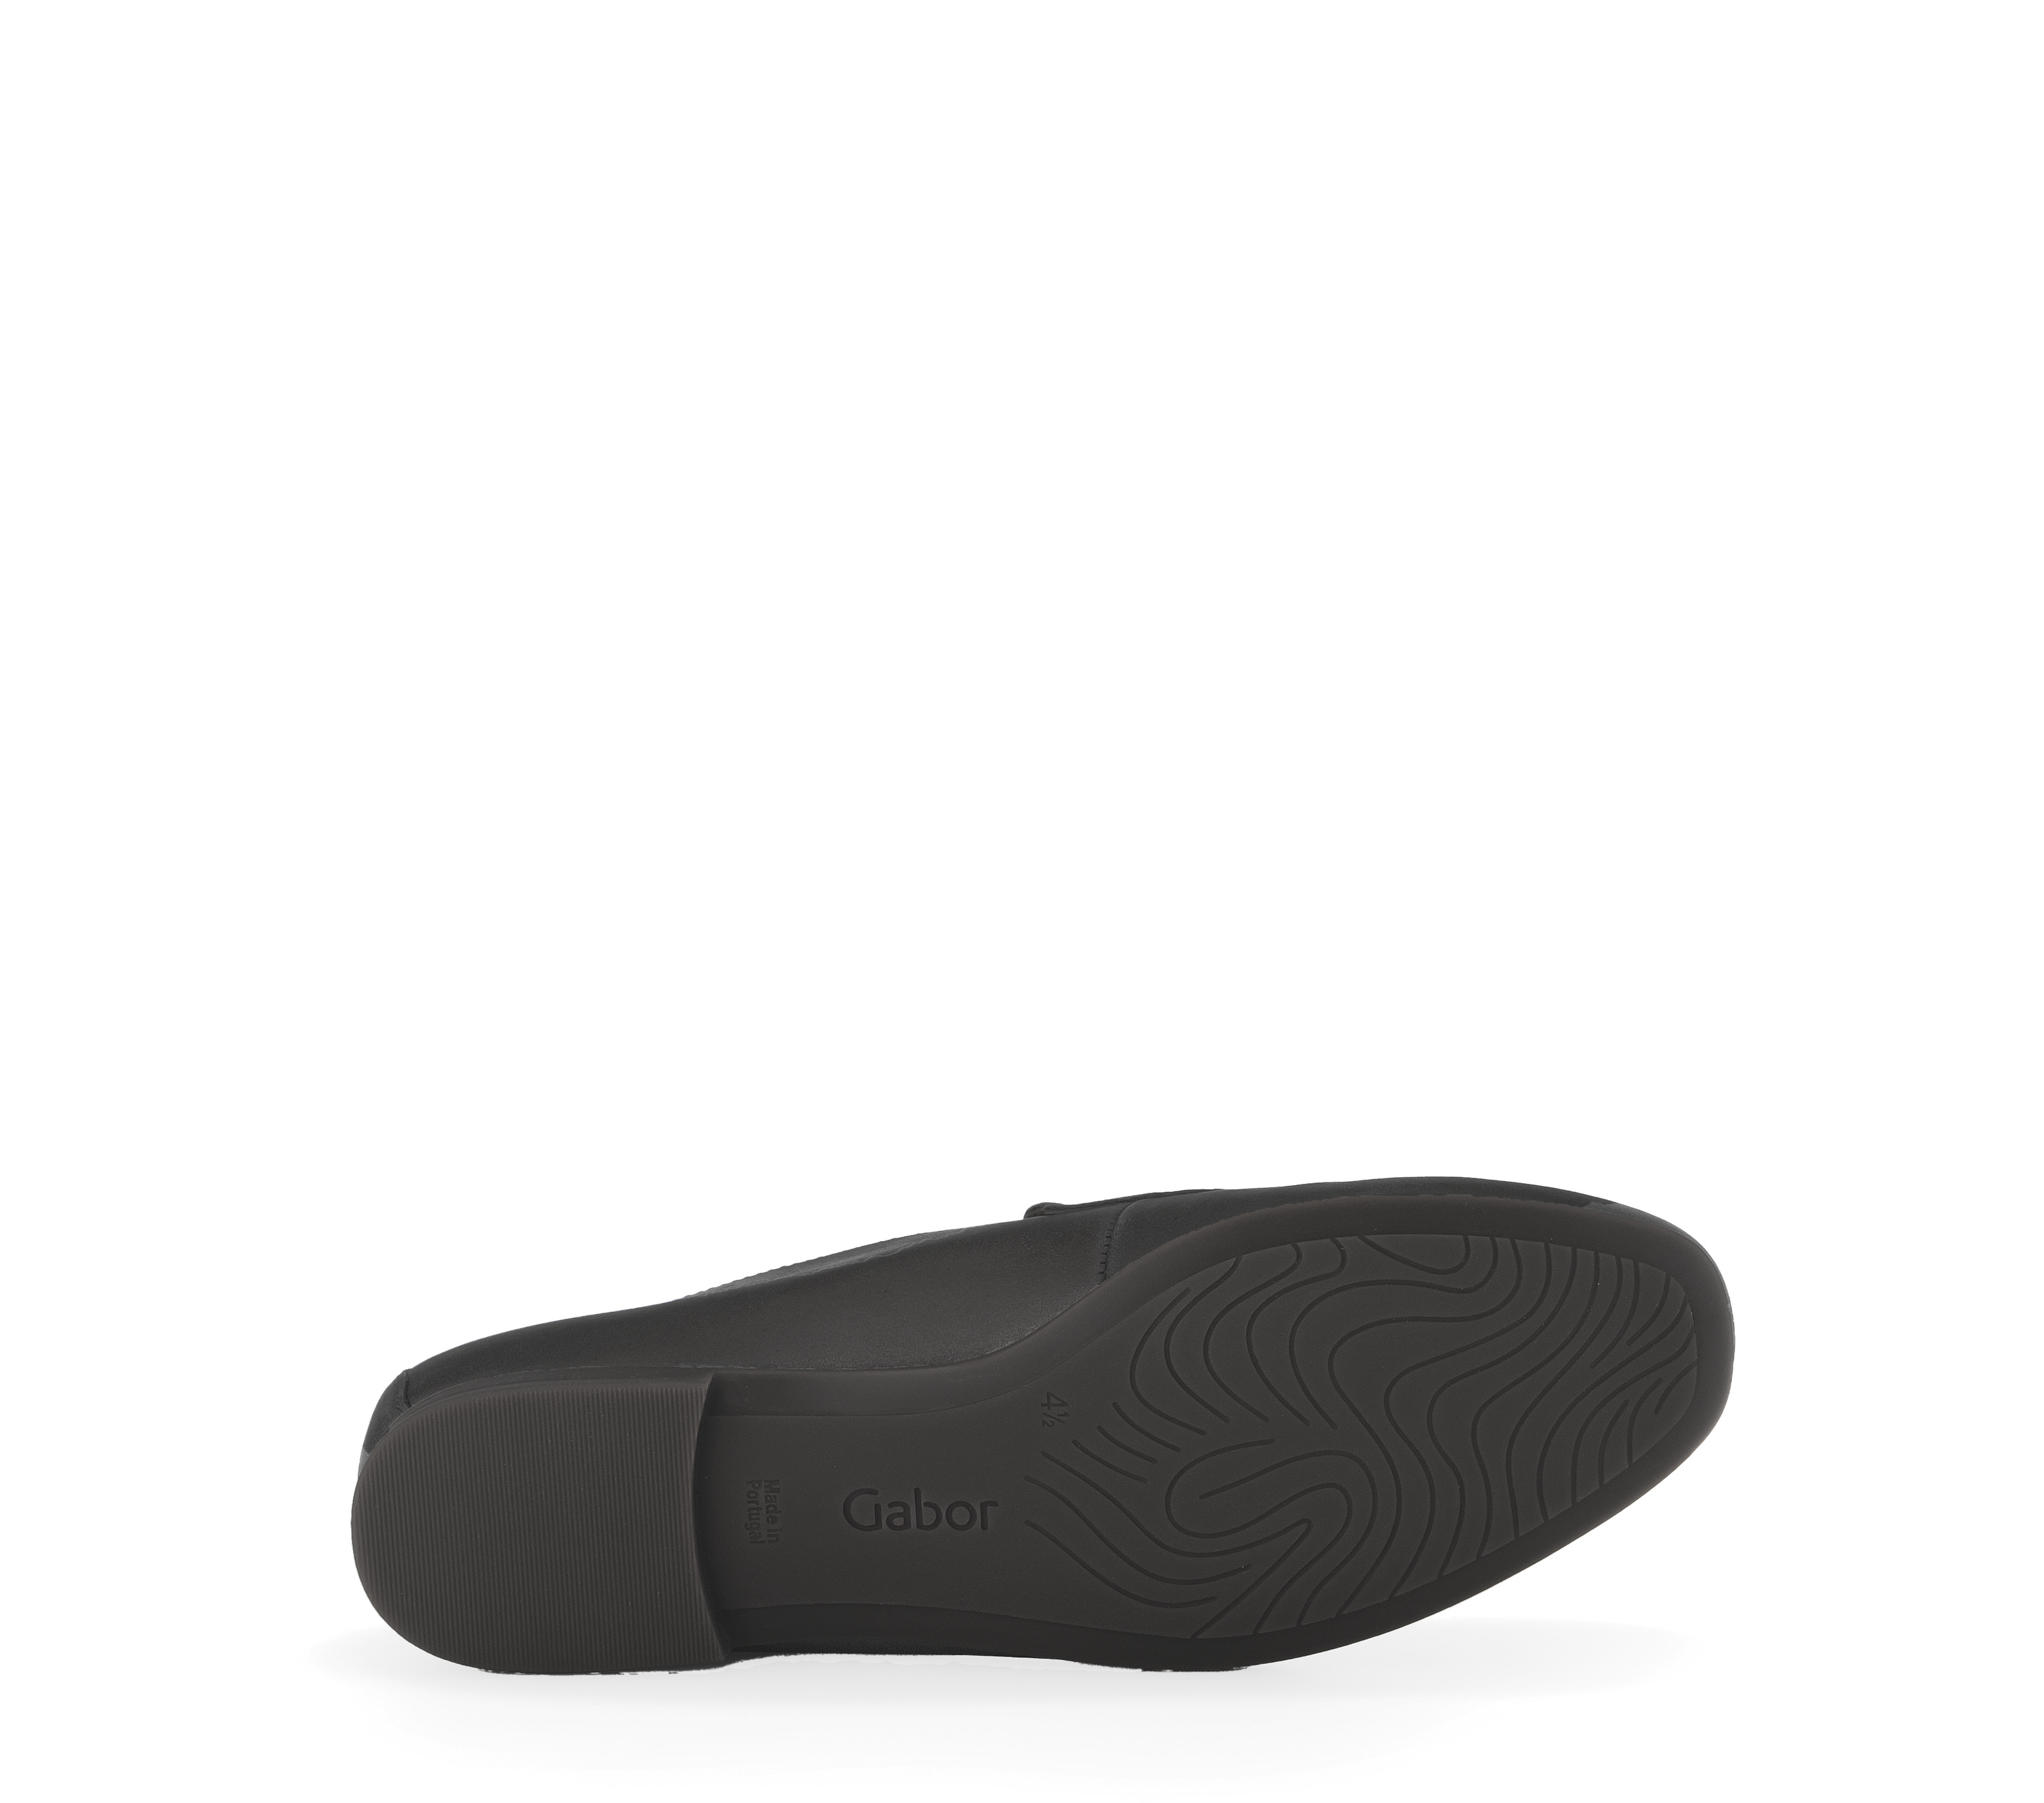 Gabor Shoes Slipper - Schwarz Leder